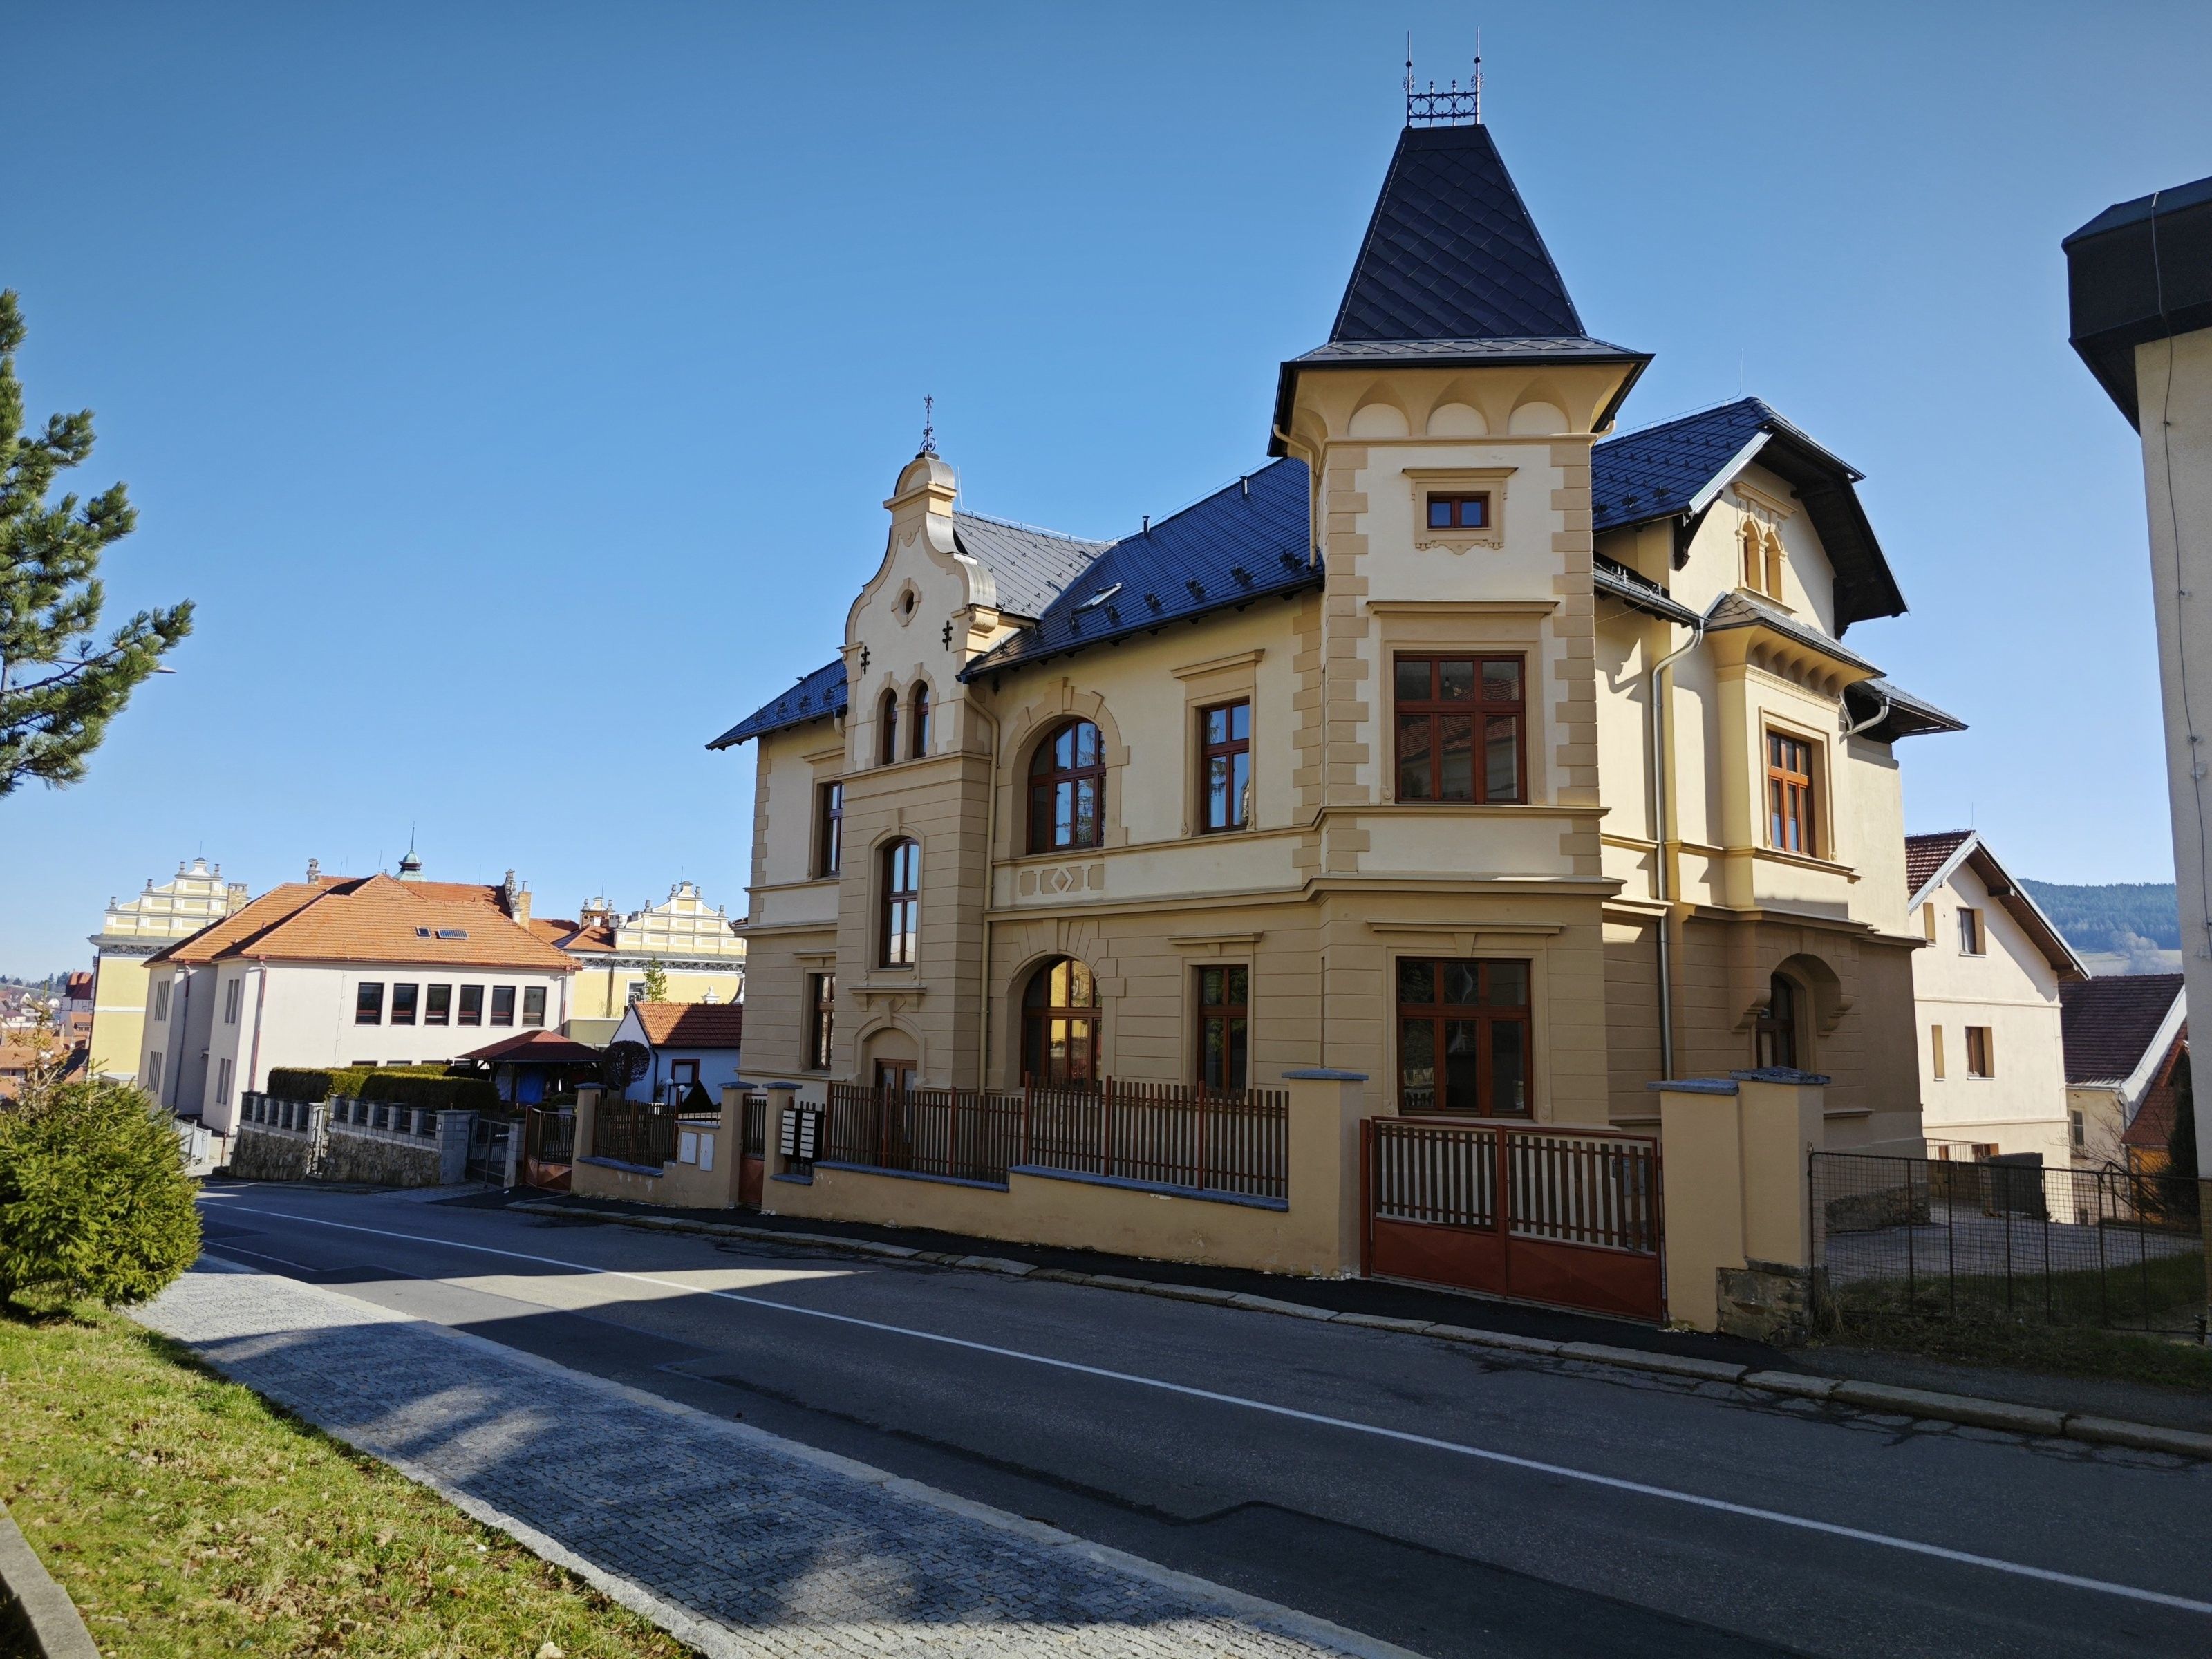 Ubytovací zařízení, Zlatá stezka, Prachatice Ii, Česko, 542 m²